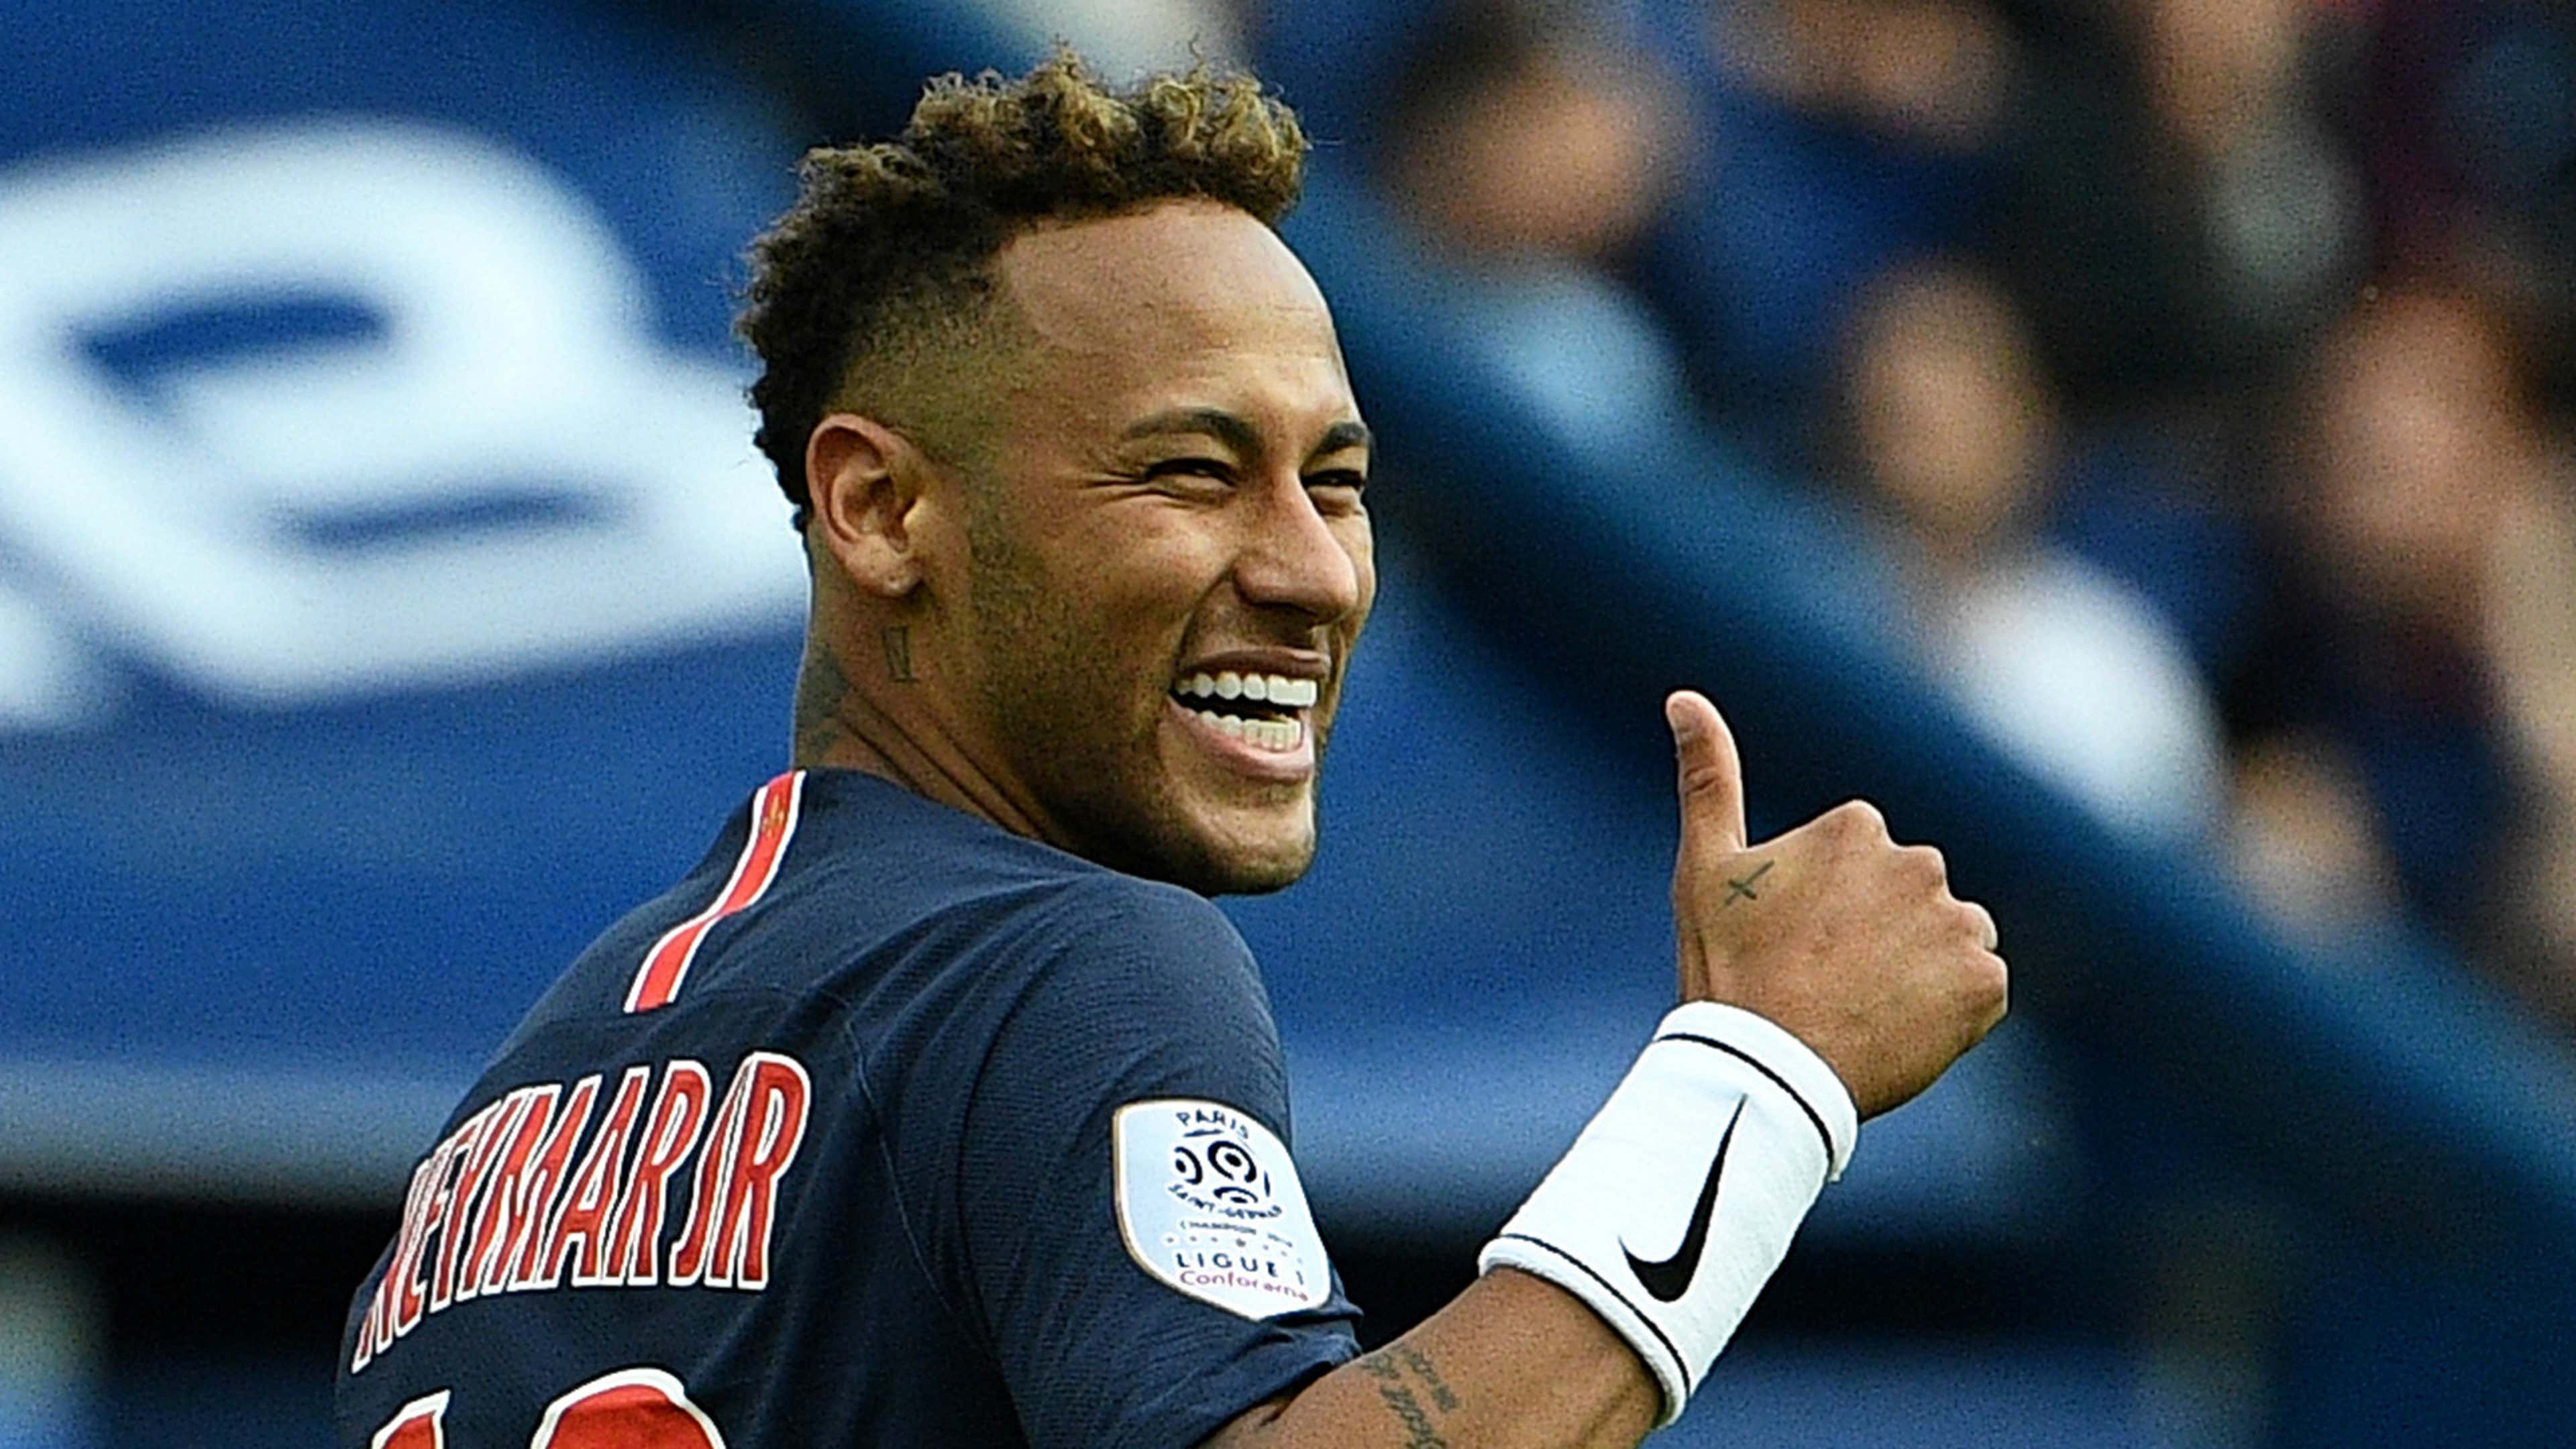 Neymar PSG Paris Saint-Germain 2018-19